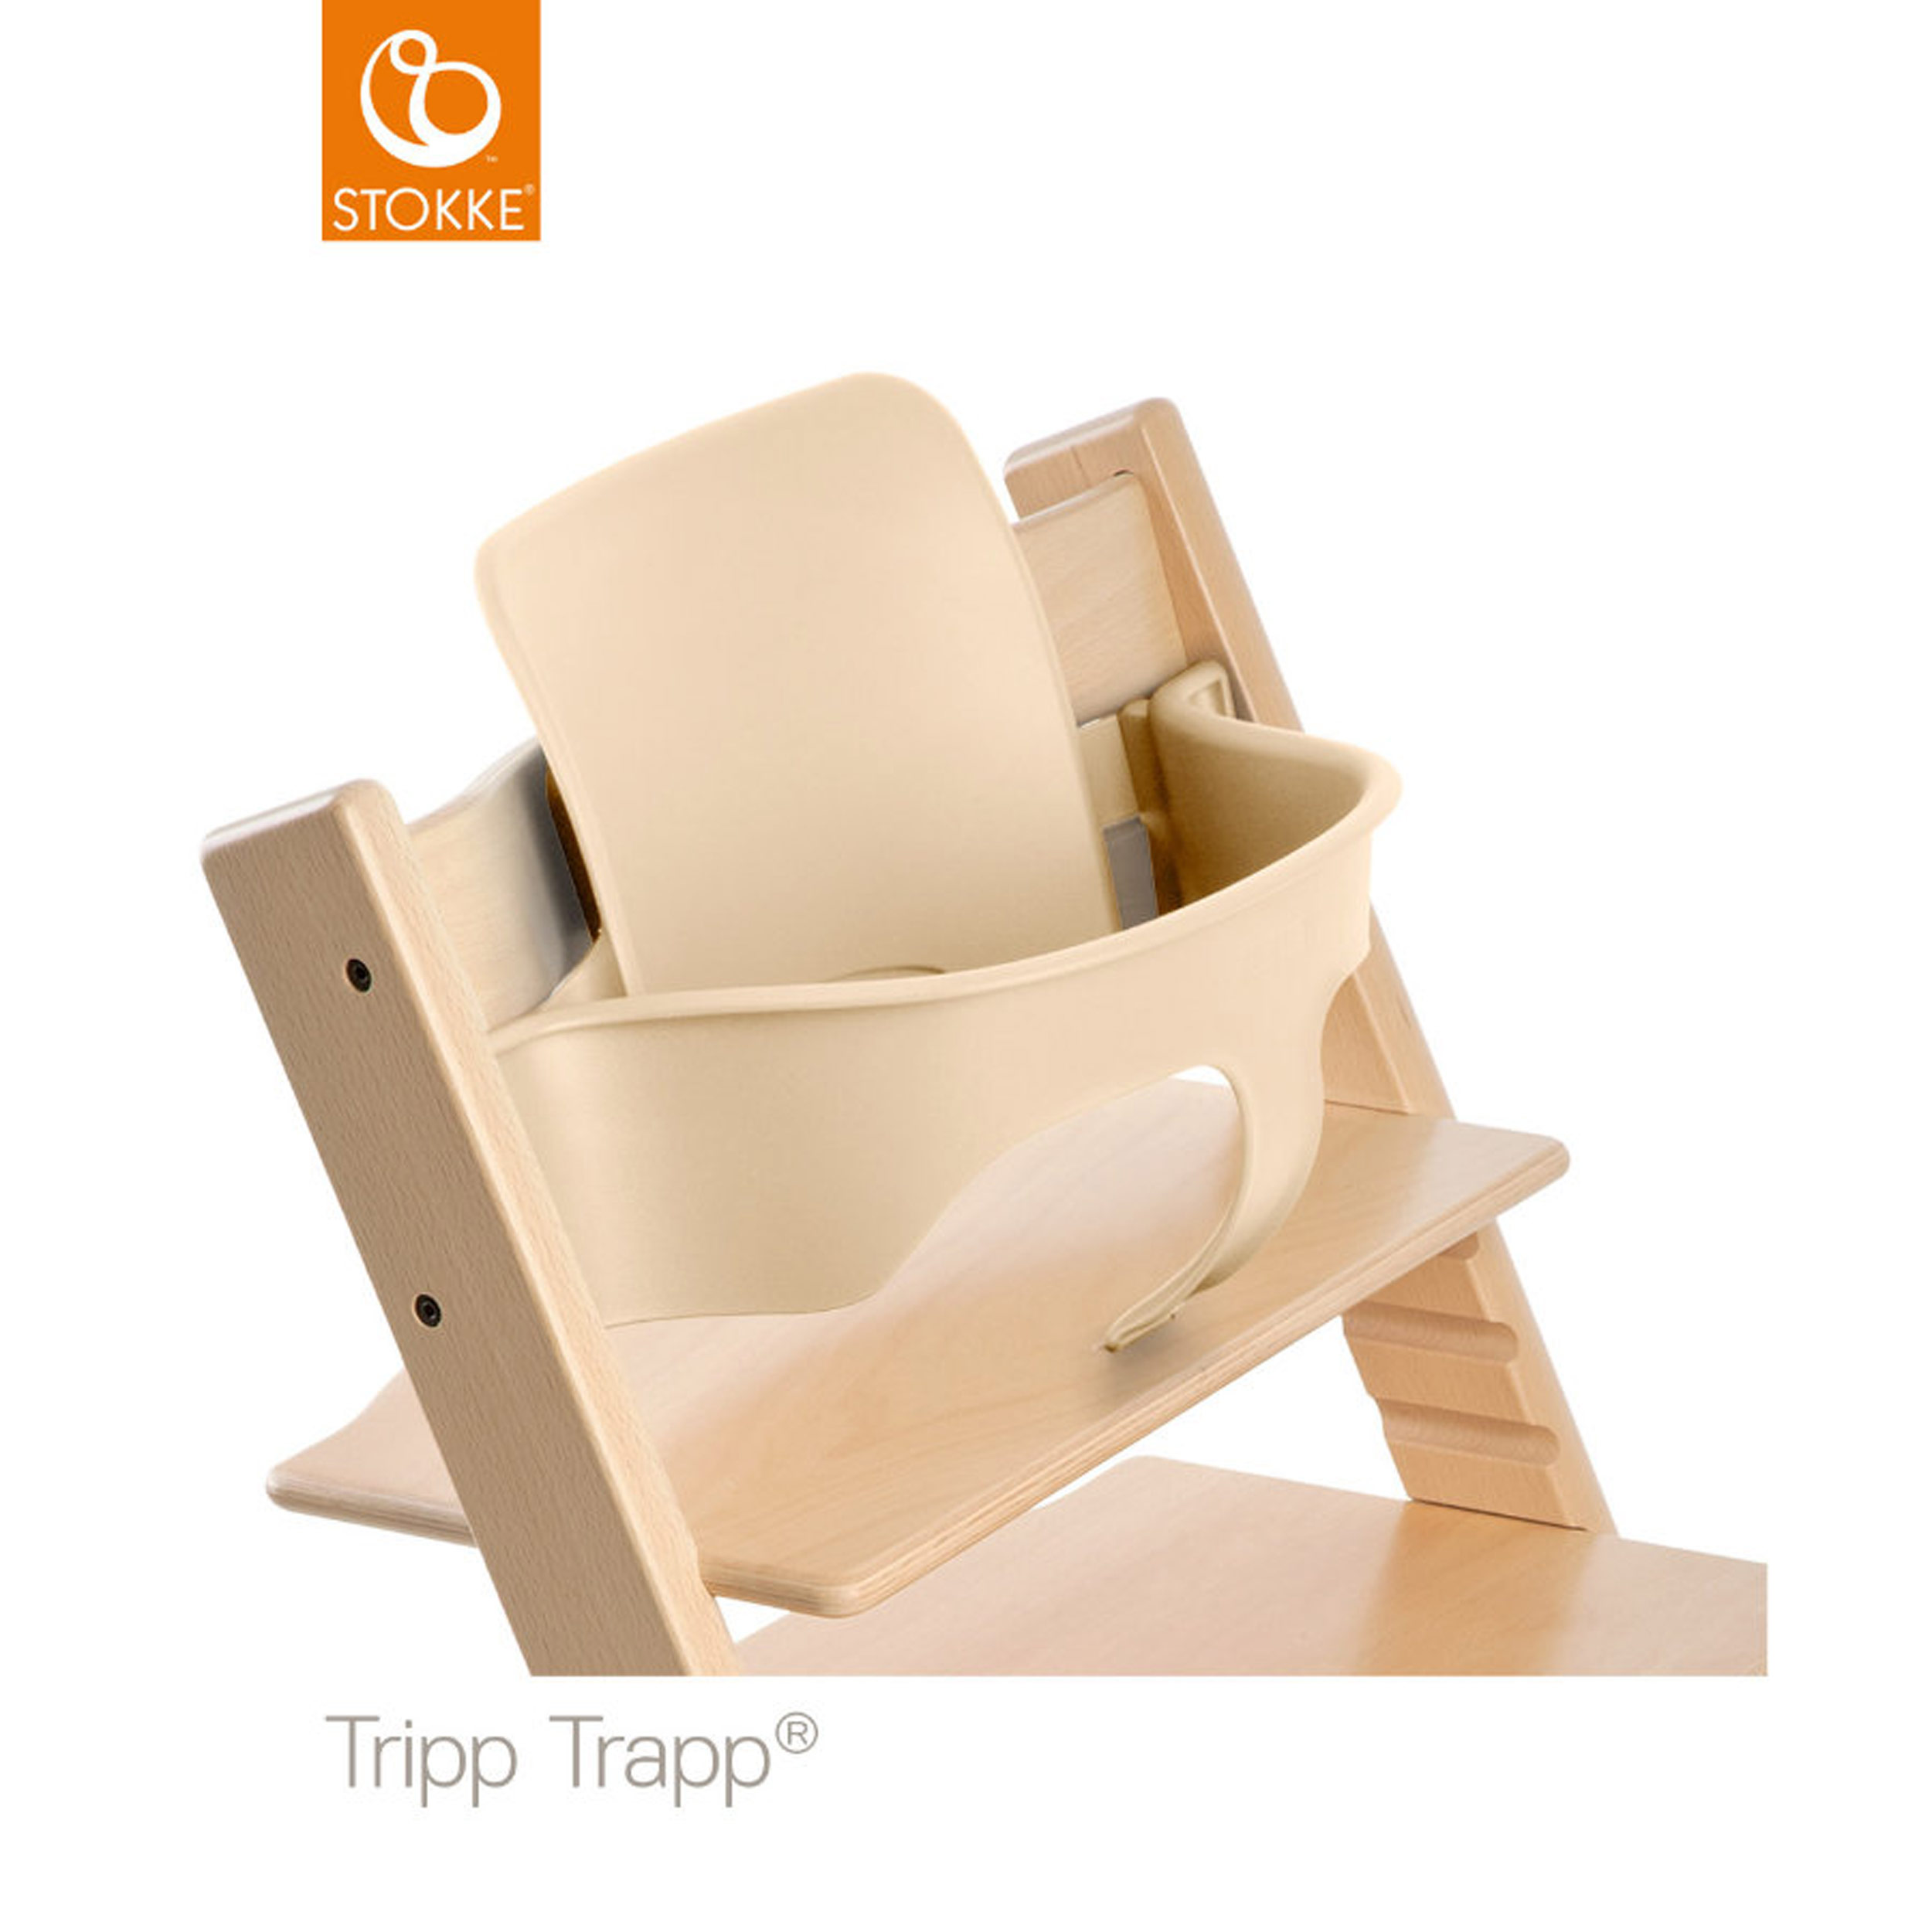 Tinydo Hochstuhl-Sitzkissen Optimal Für Stokke Tripp-Trapp Und Viele Anderen T 